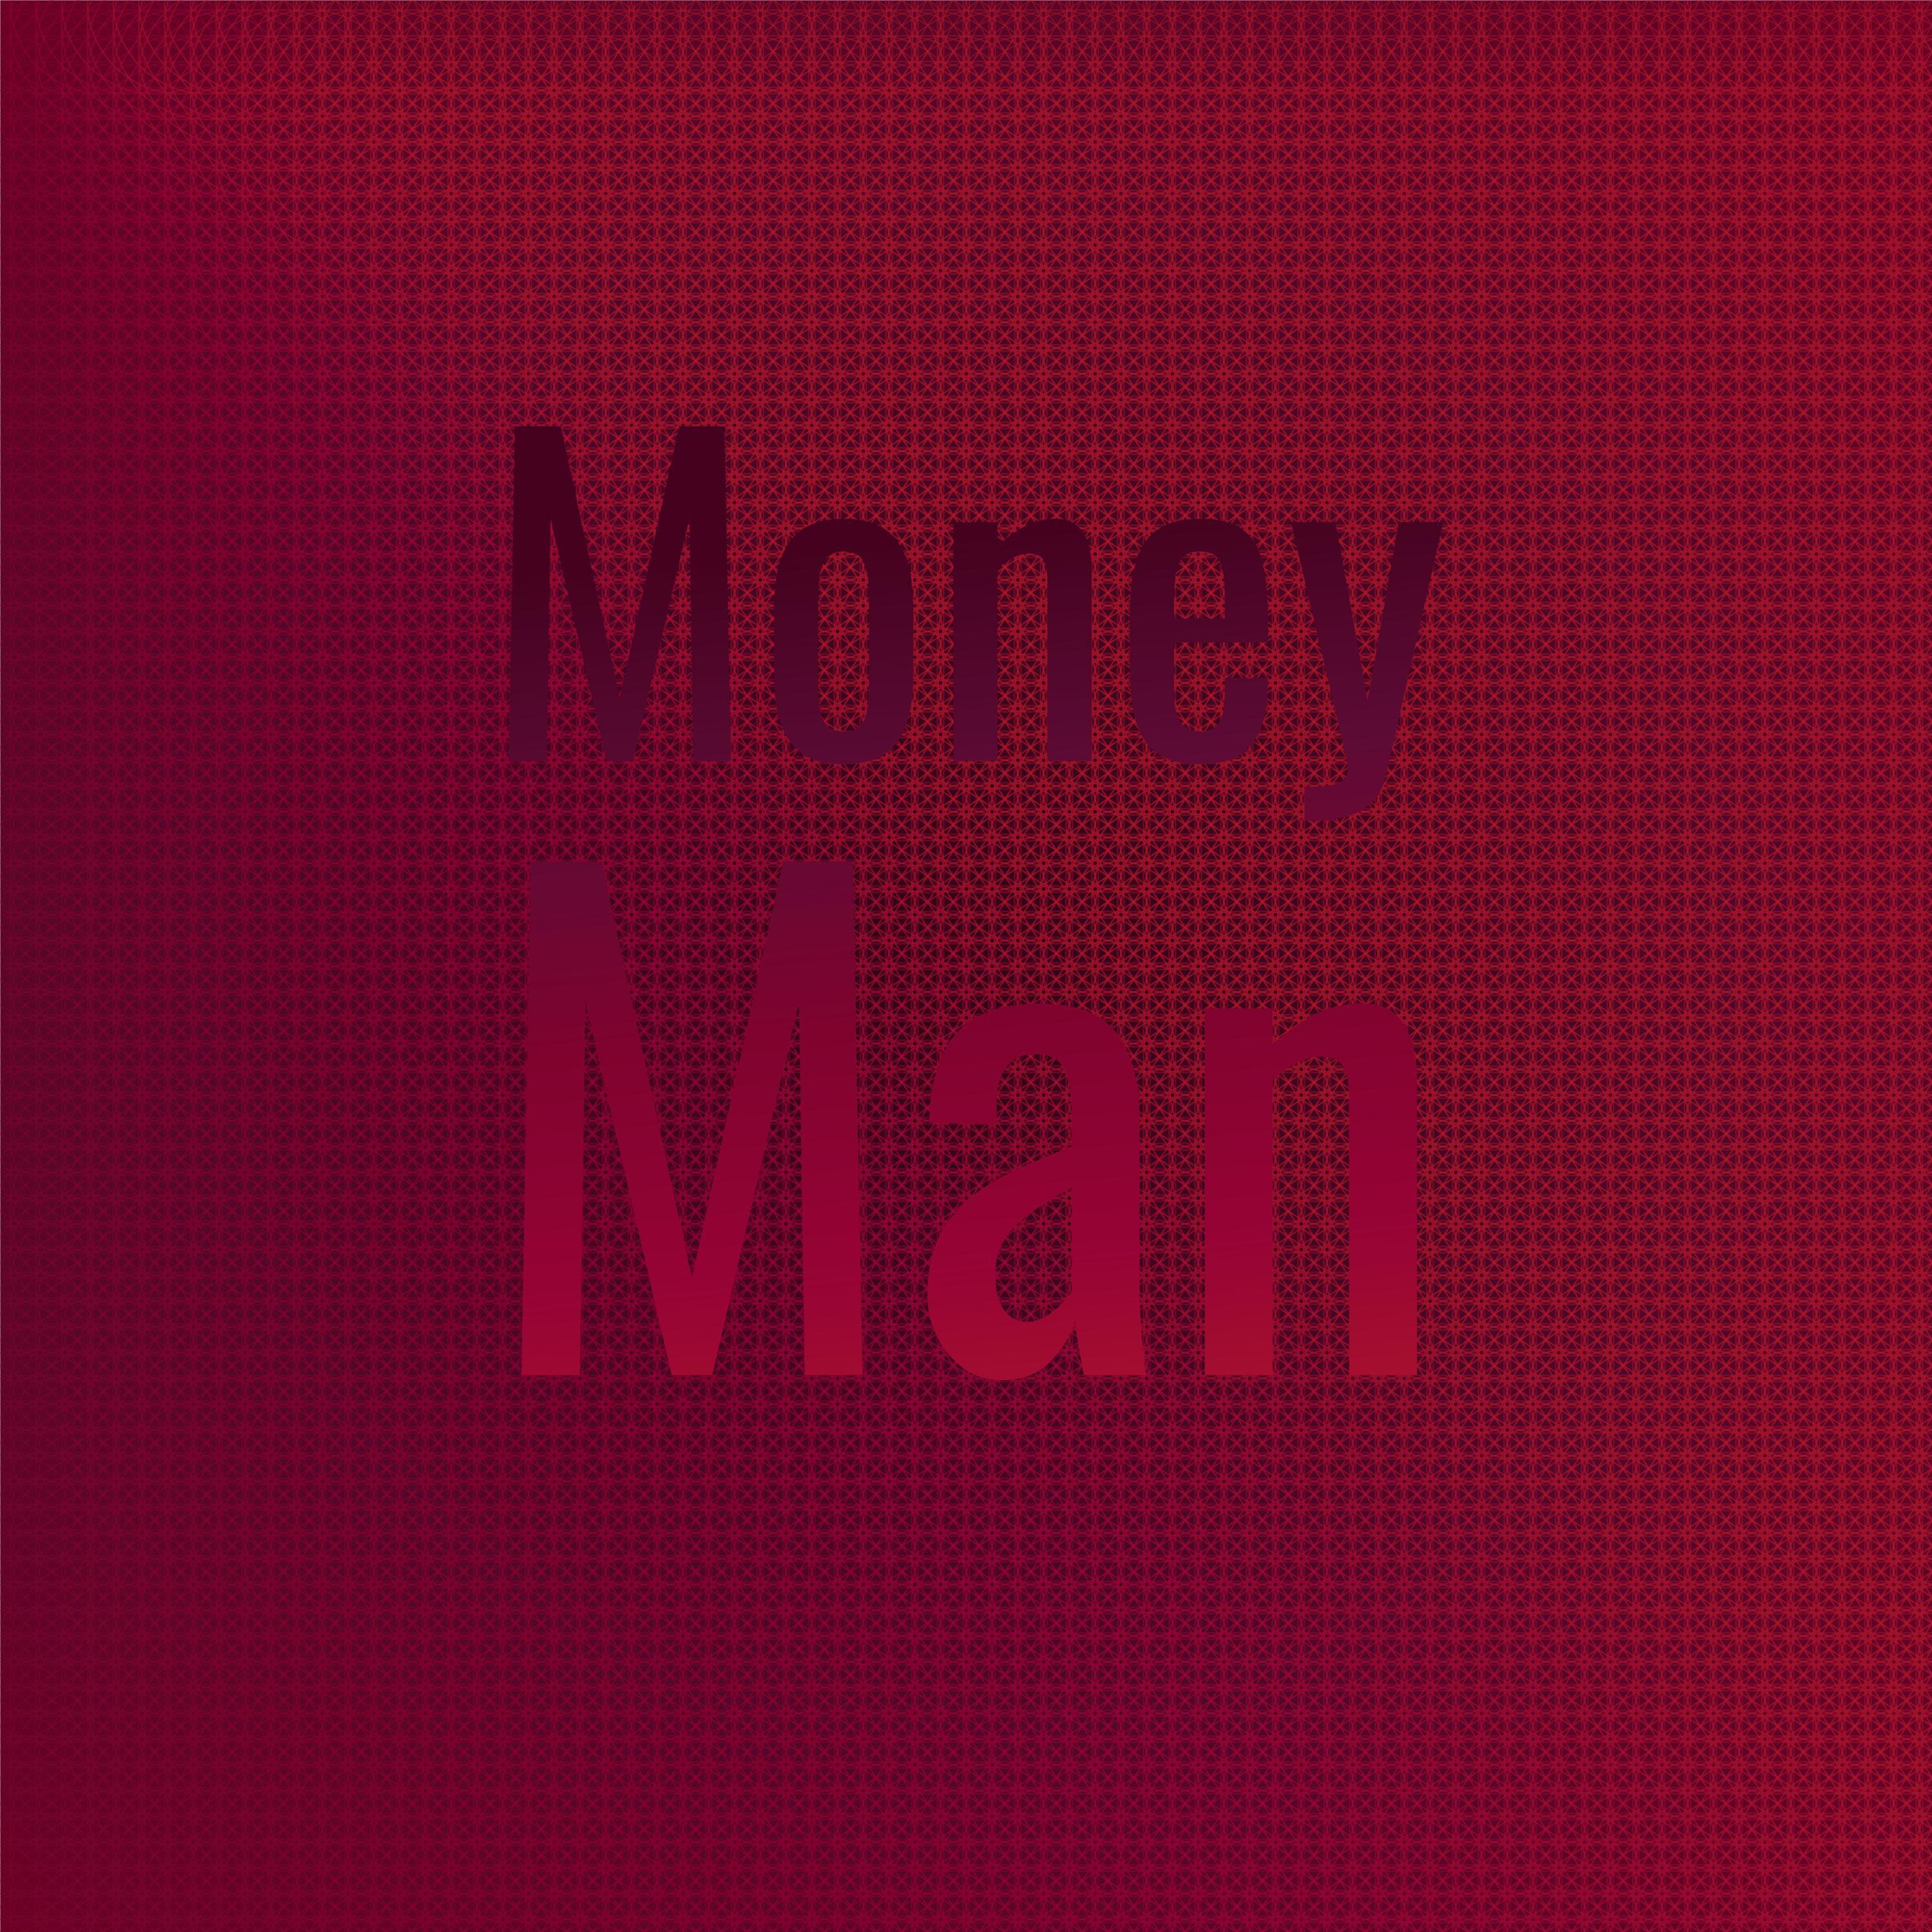 The Untouchables - Money Man